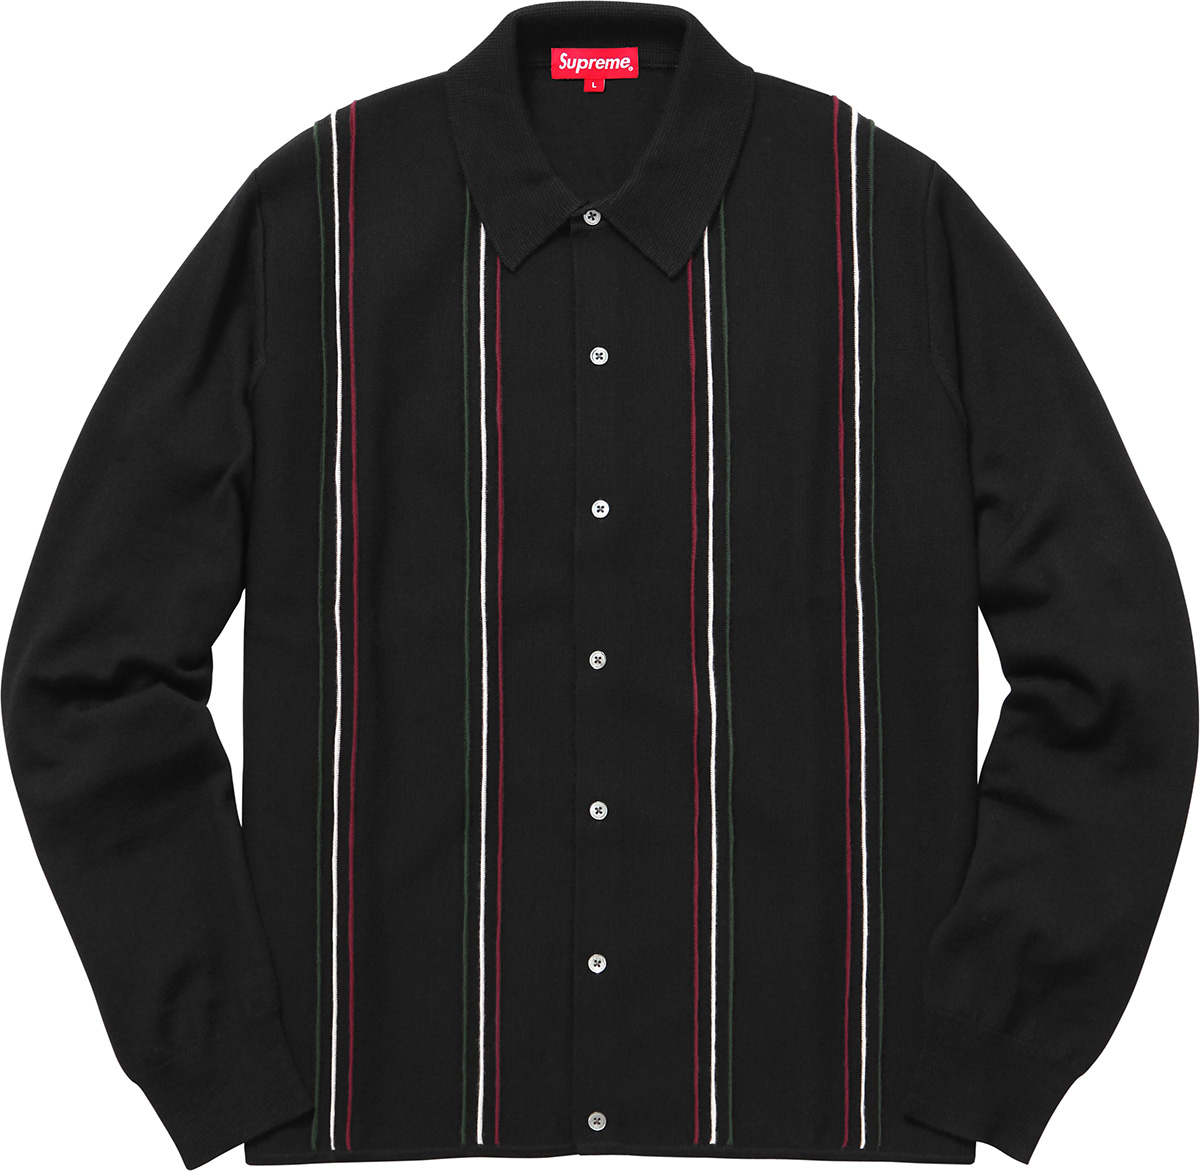 売り切りたいので値下げ可能ですsupreme Striped Polo Sweater  モーガン蔵人